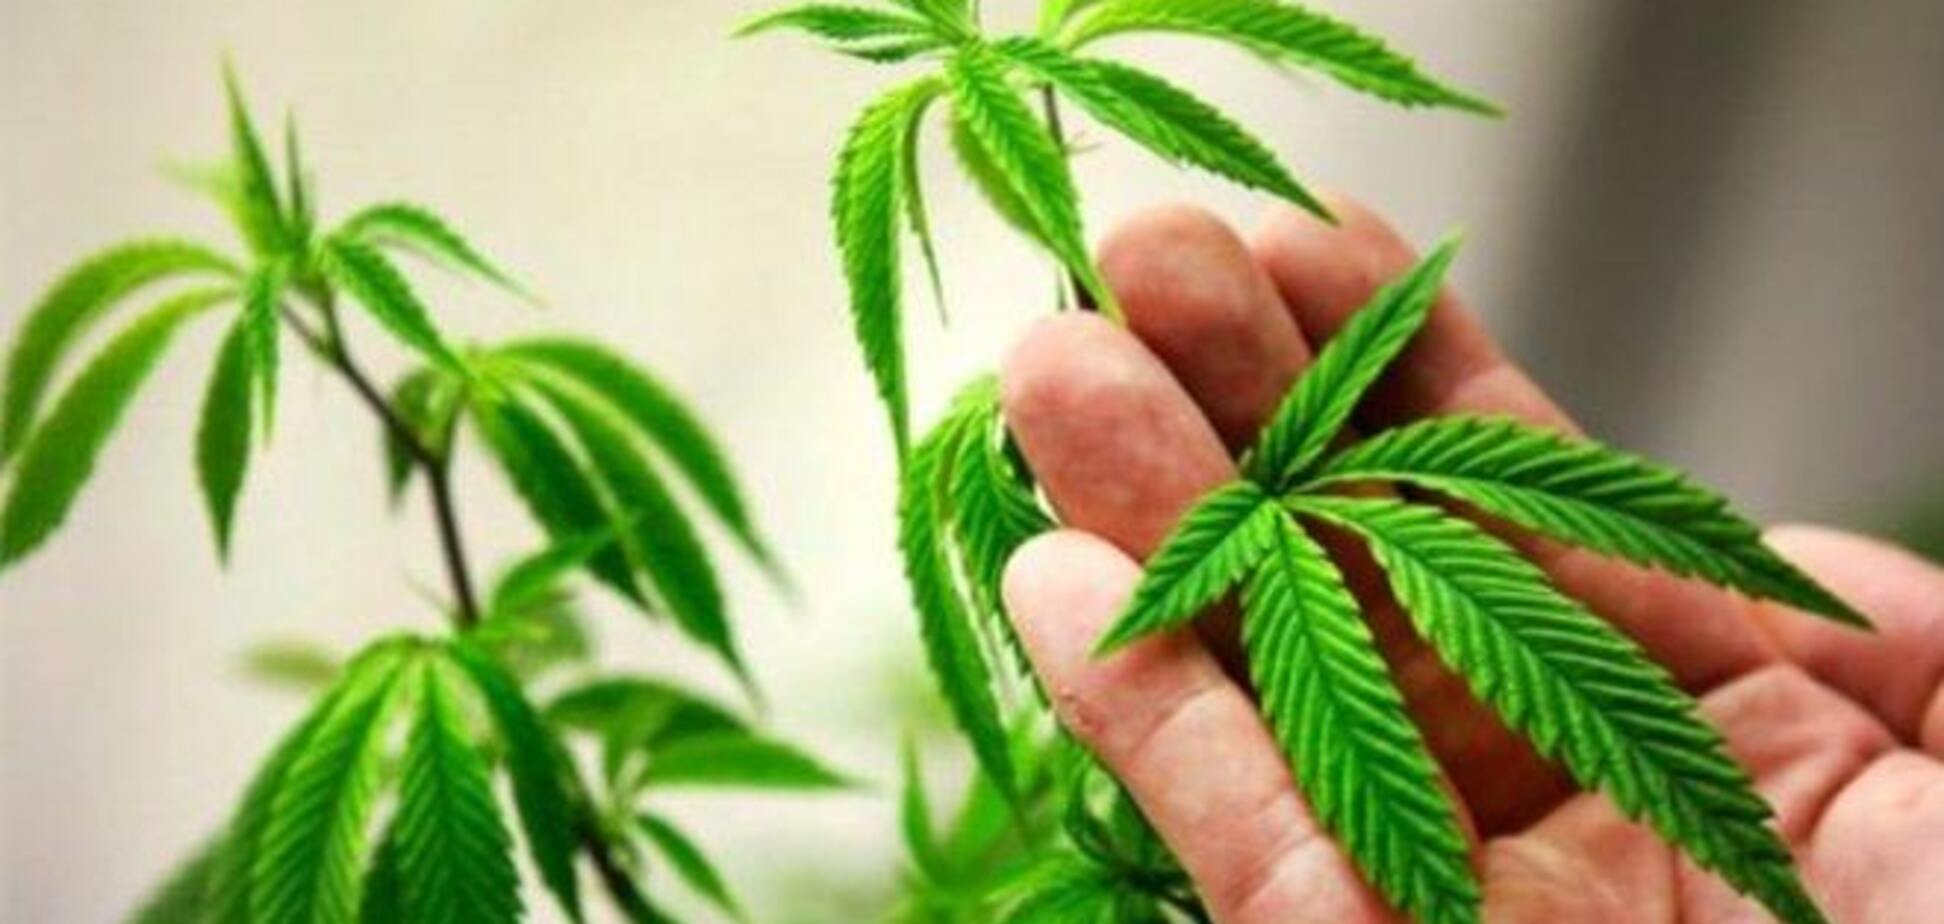 20-й штат США легалізував марихуану